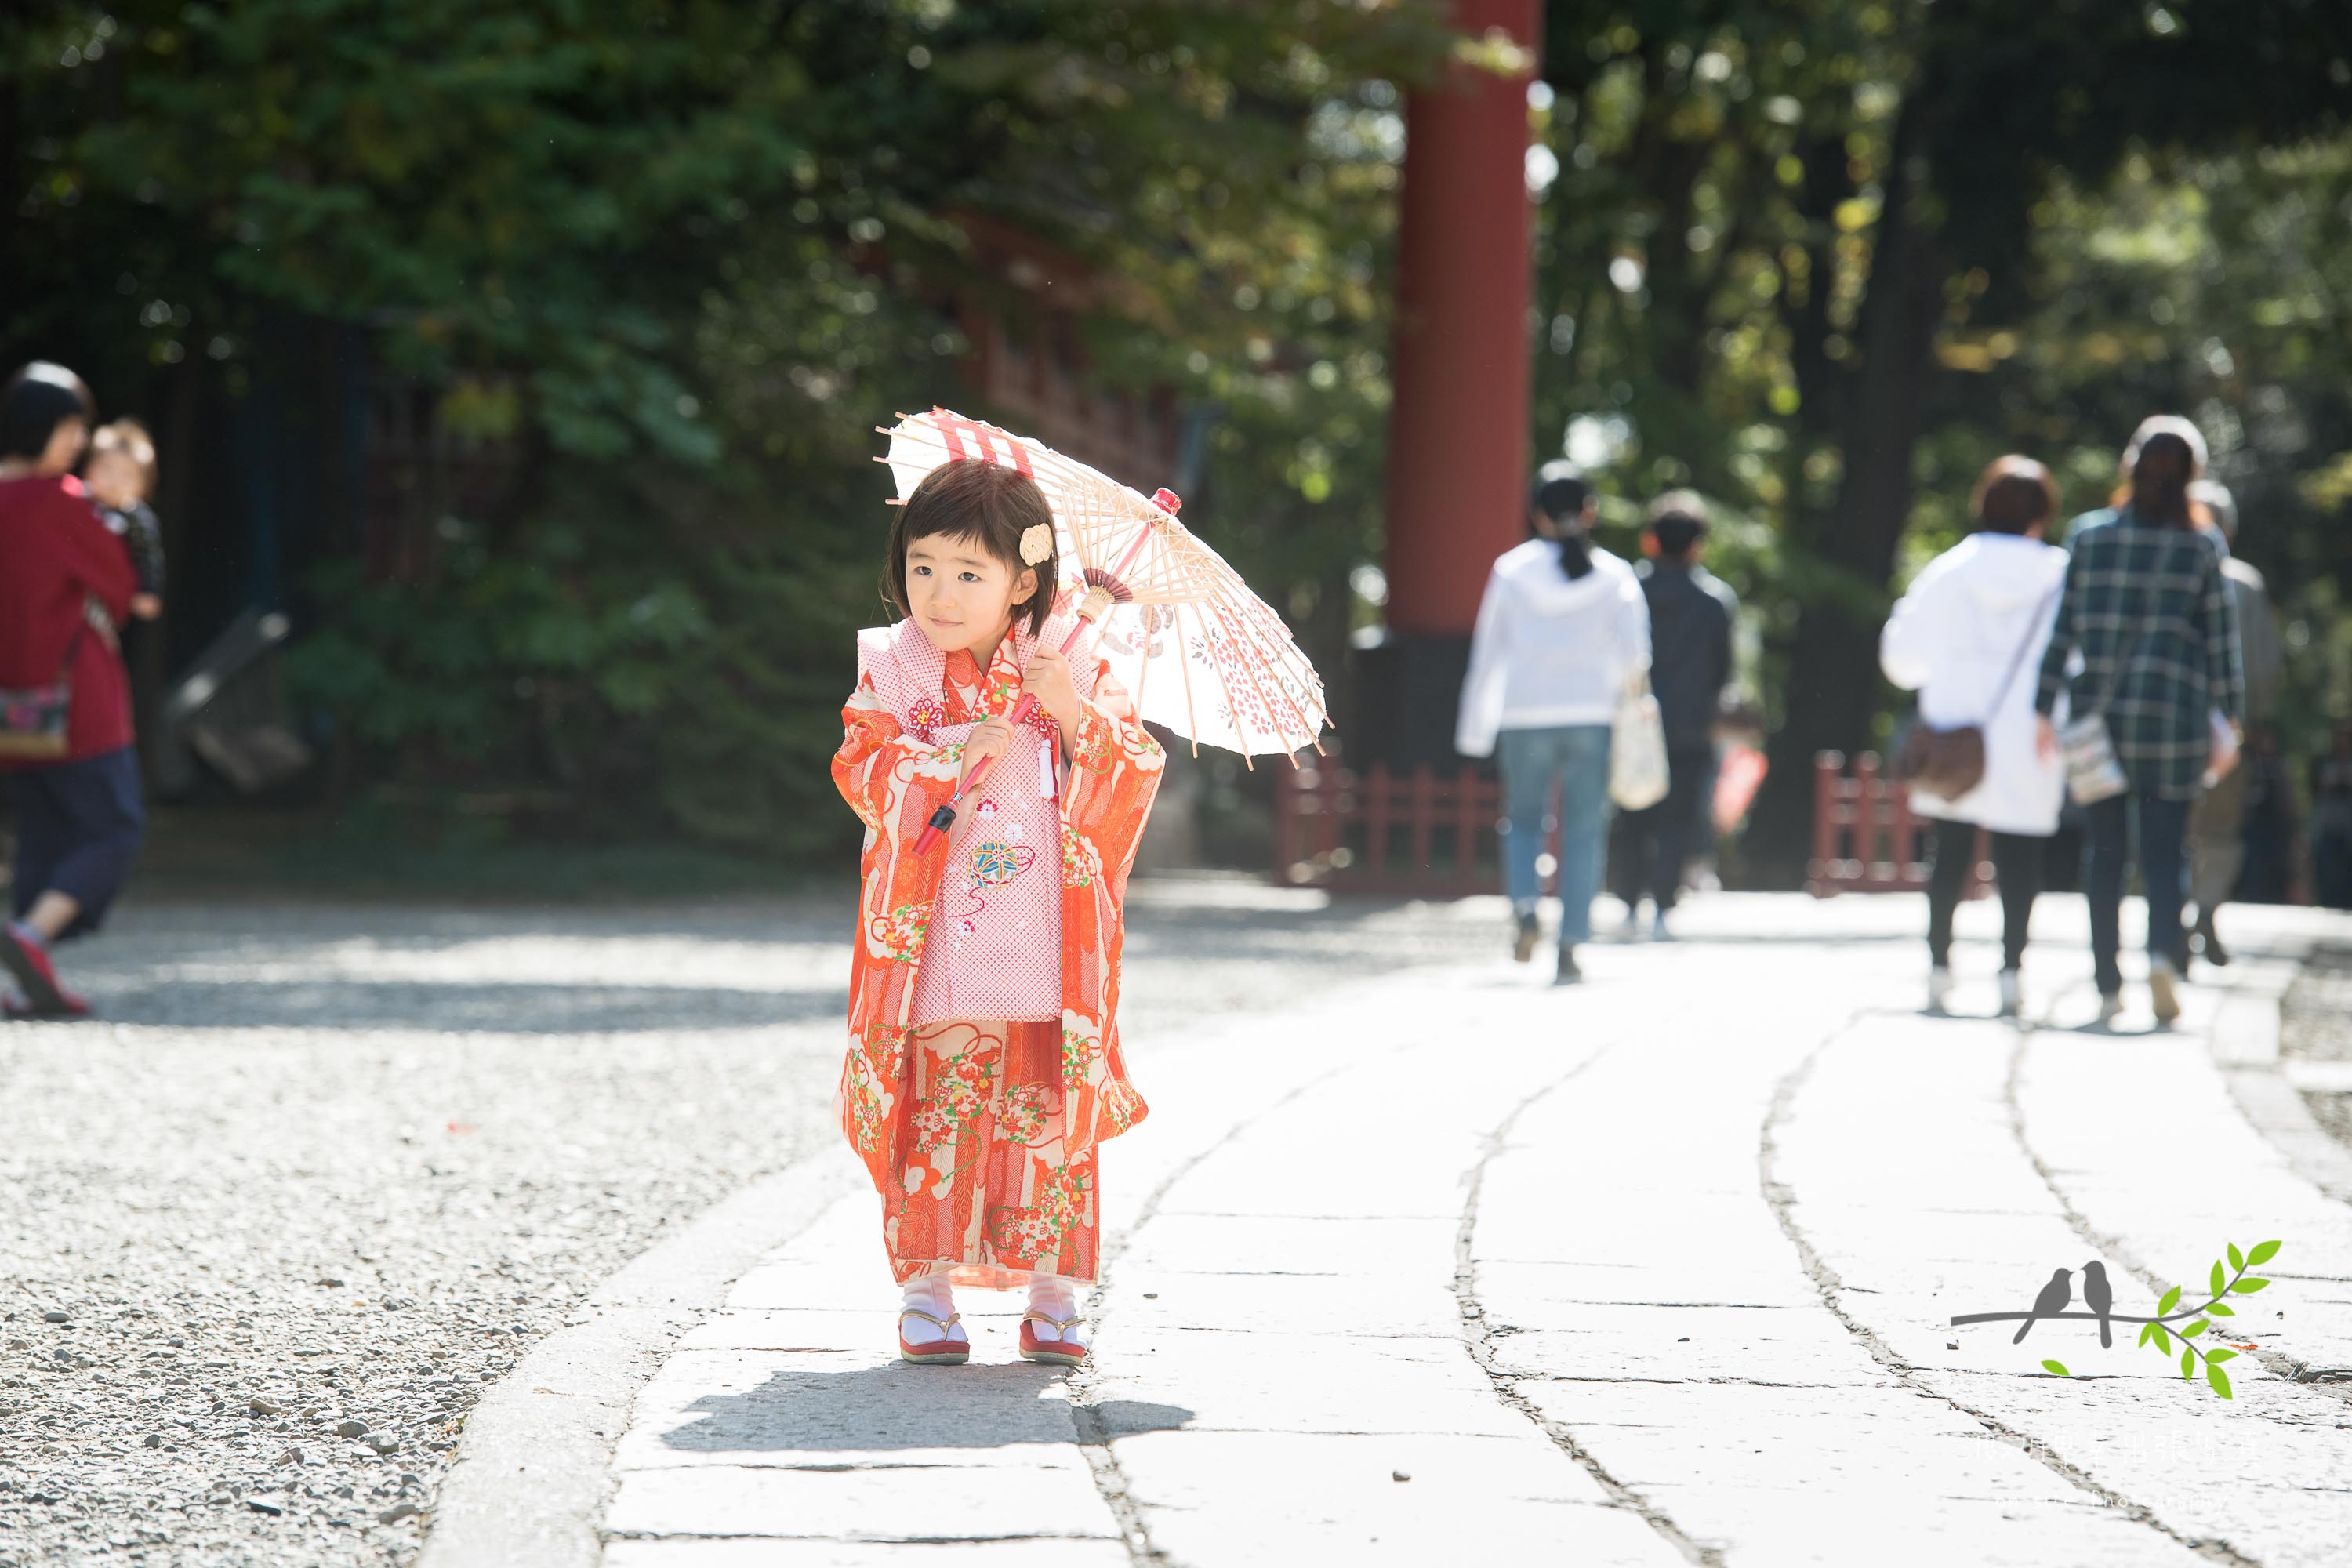 和傘をさし参道を歩くオレンジ色の着物姿の小さな女の子